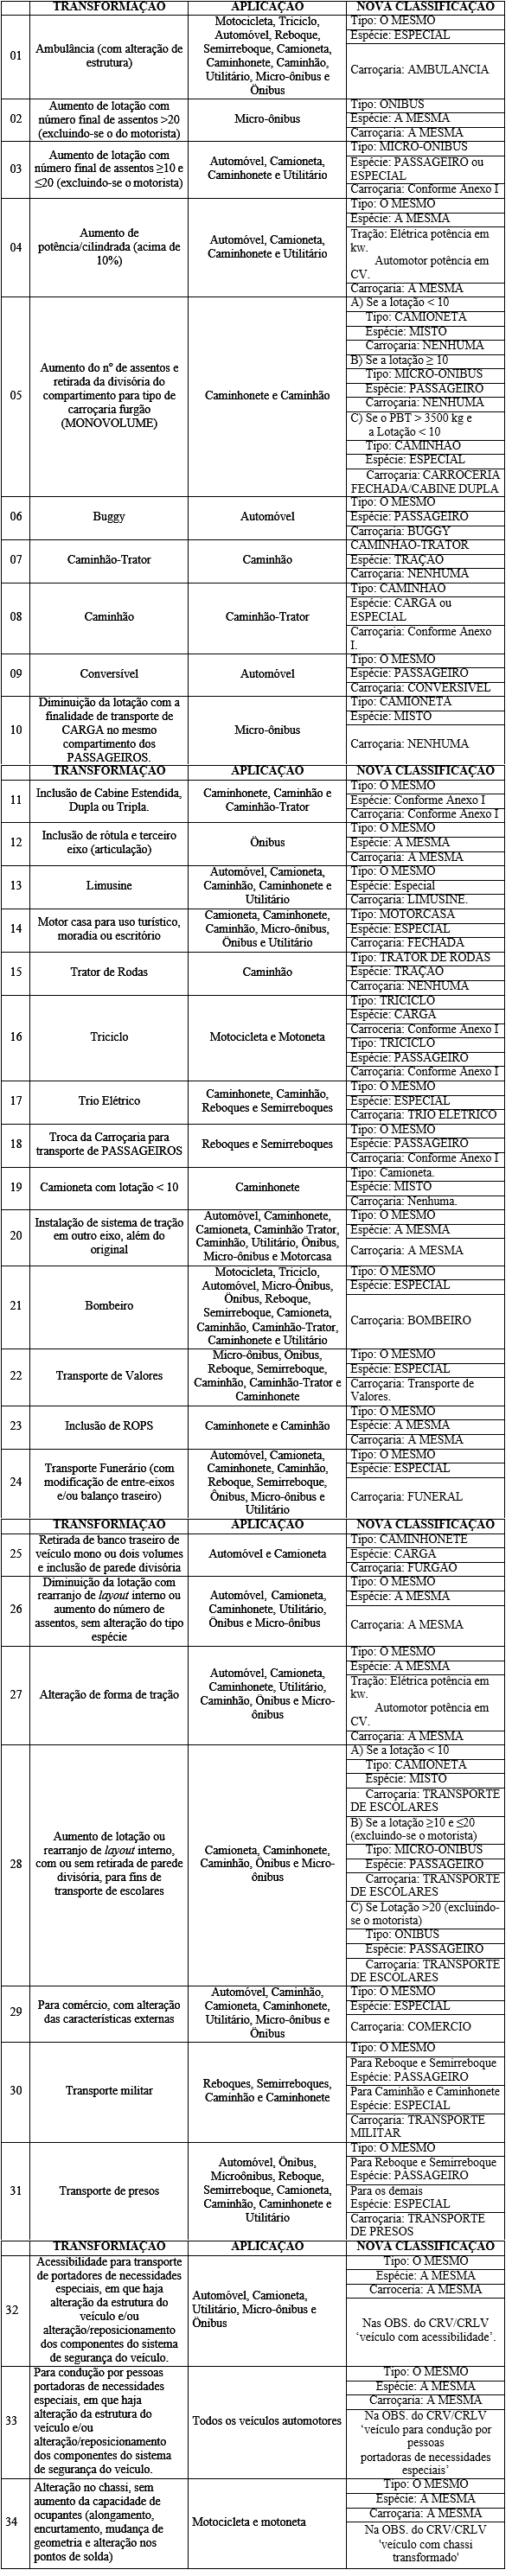 Ilustração representativa da Tabela  II  - Transformações de Veículos Sujeitos a Homologação Compulsória.